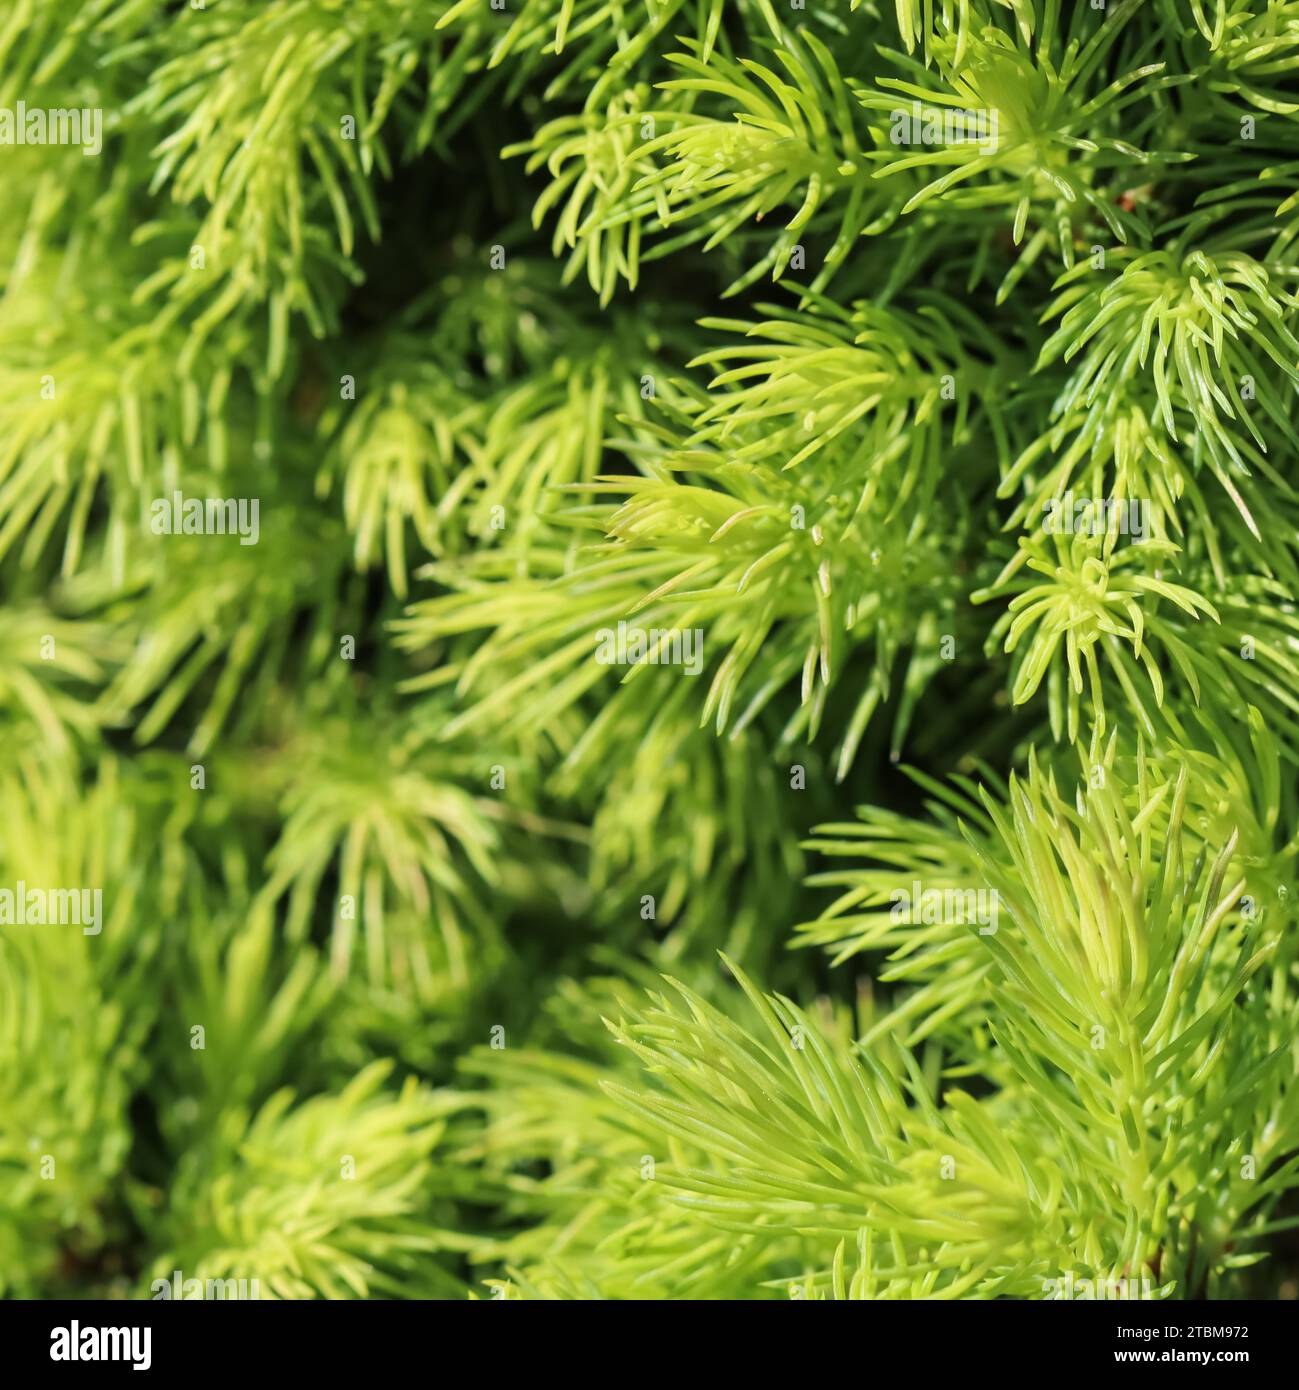 Abete rosso canadese (Picea) glauca conica. Abete bianco. Albero sempreverde decorativo di conifere in primavera Foto Stock